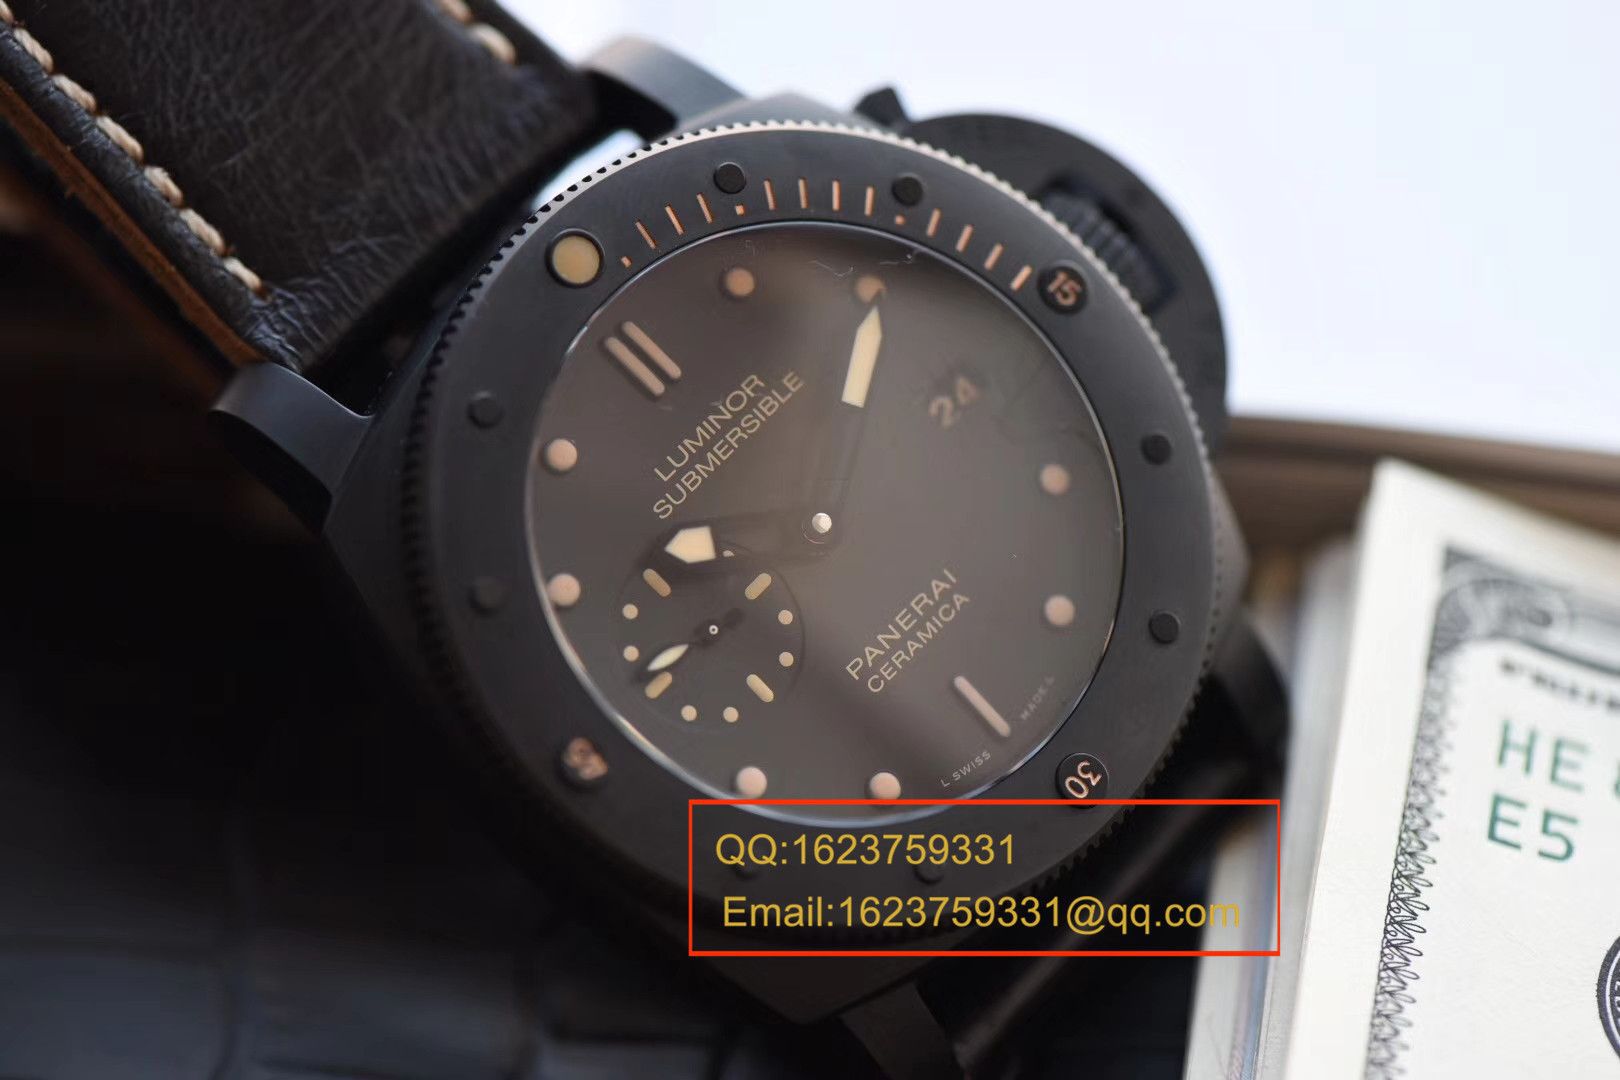 视频评测沛纳海特别版腕表系列PAM 00508腕表【VS一比一顶级复刻手表】VS 508 V2 升级版 / VSPAM00508MM